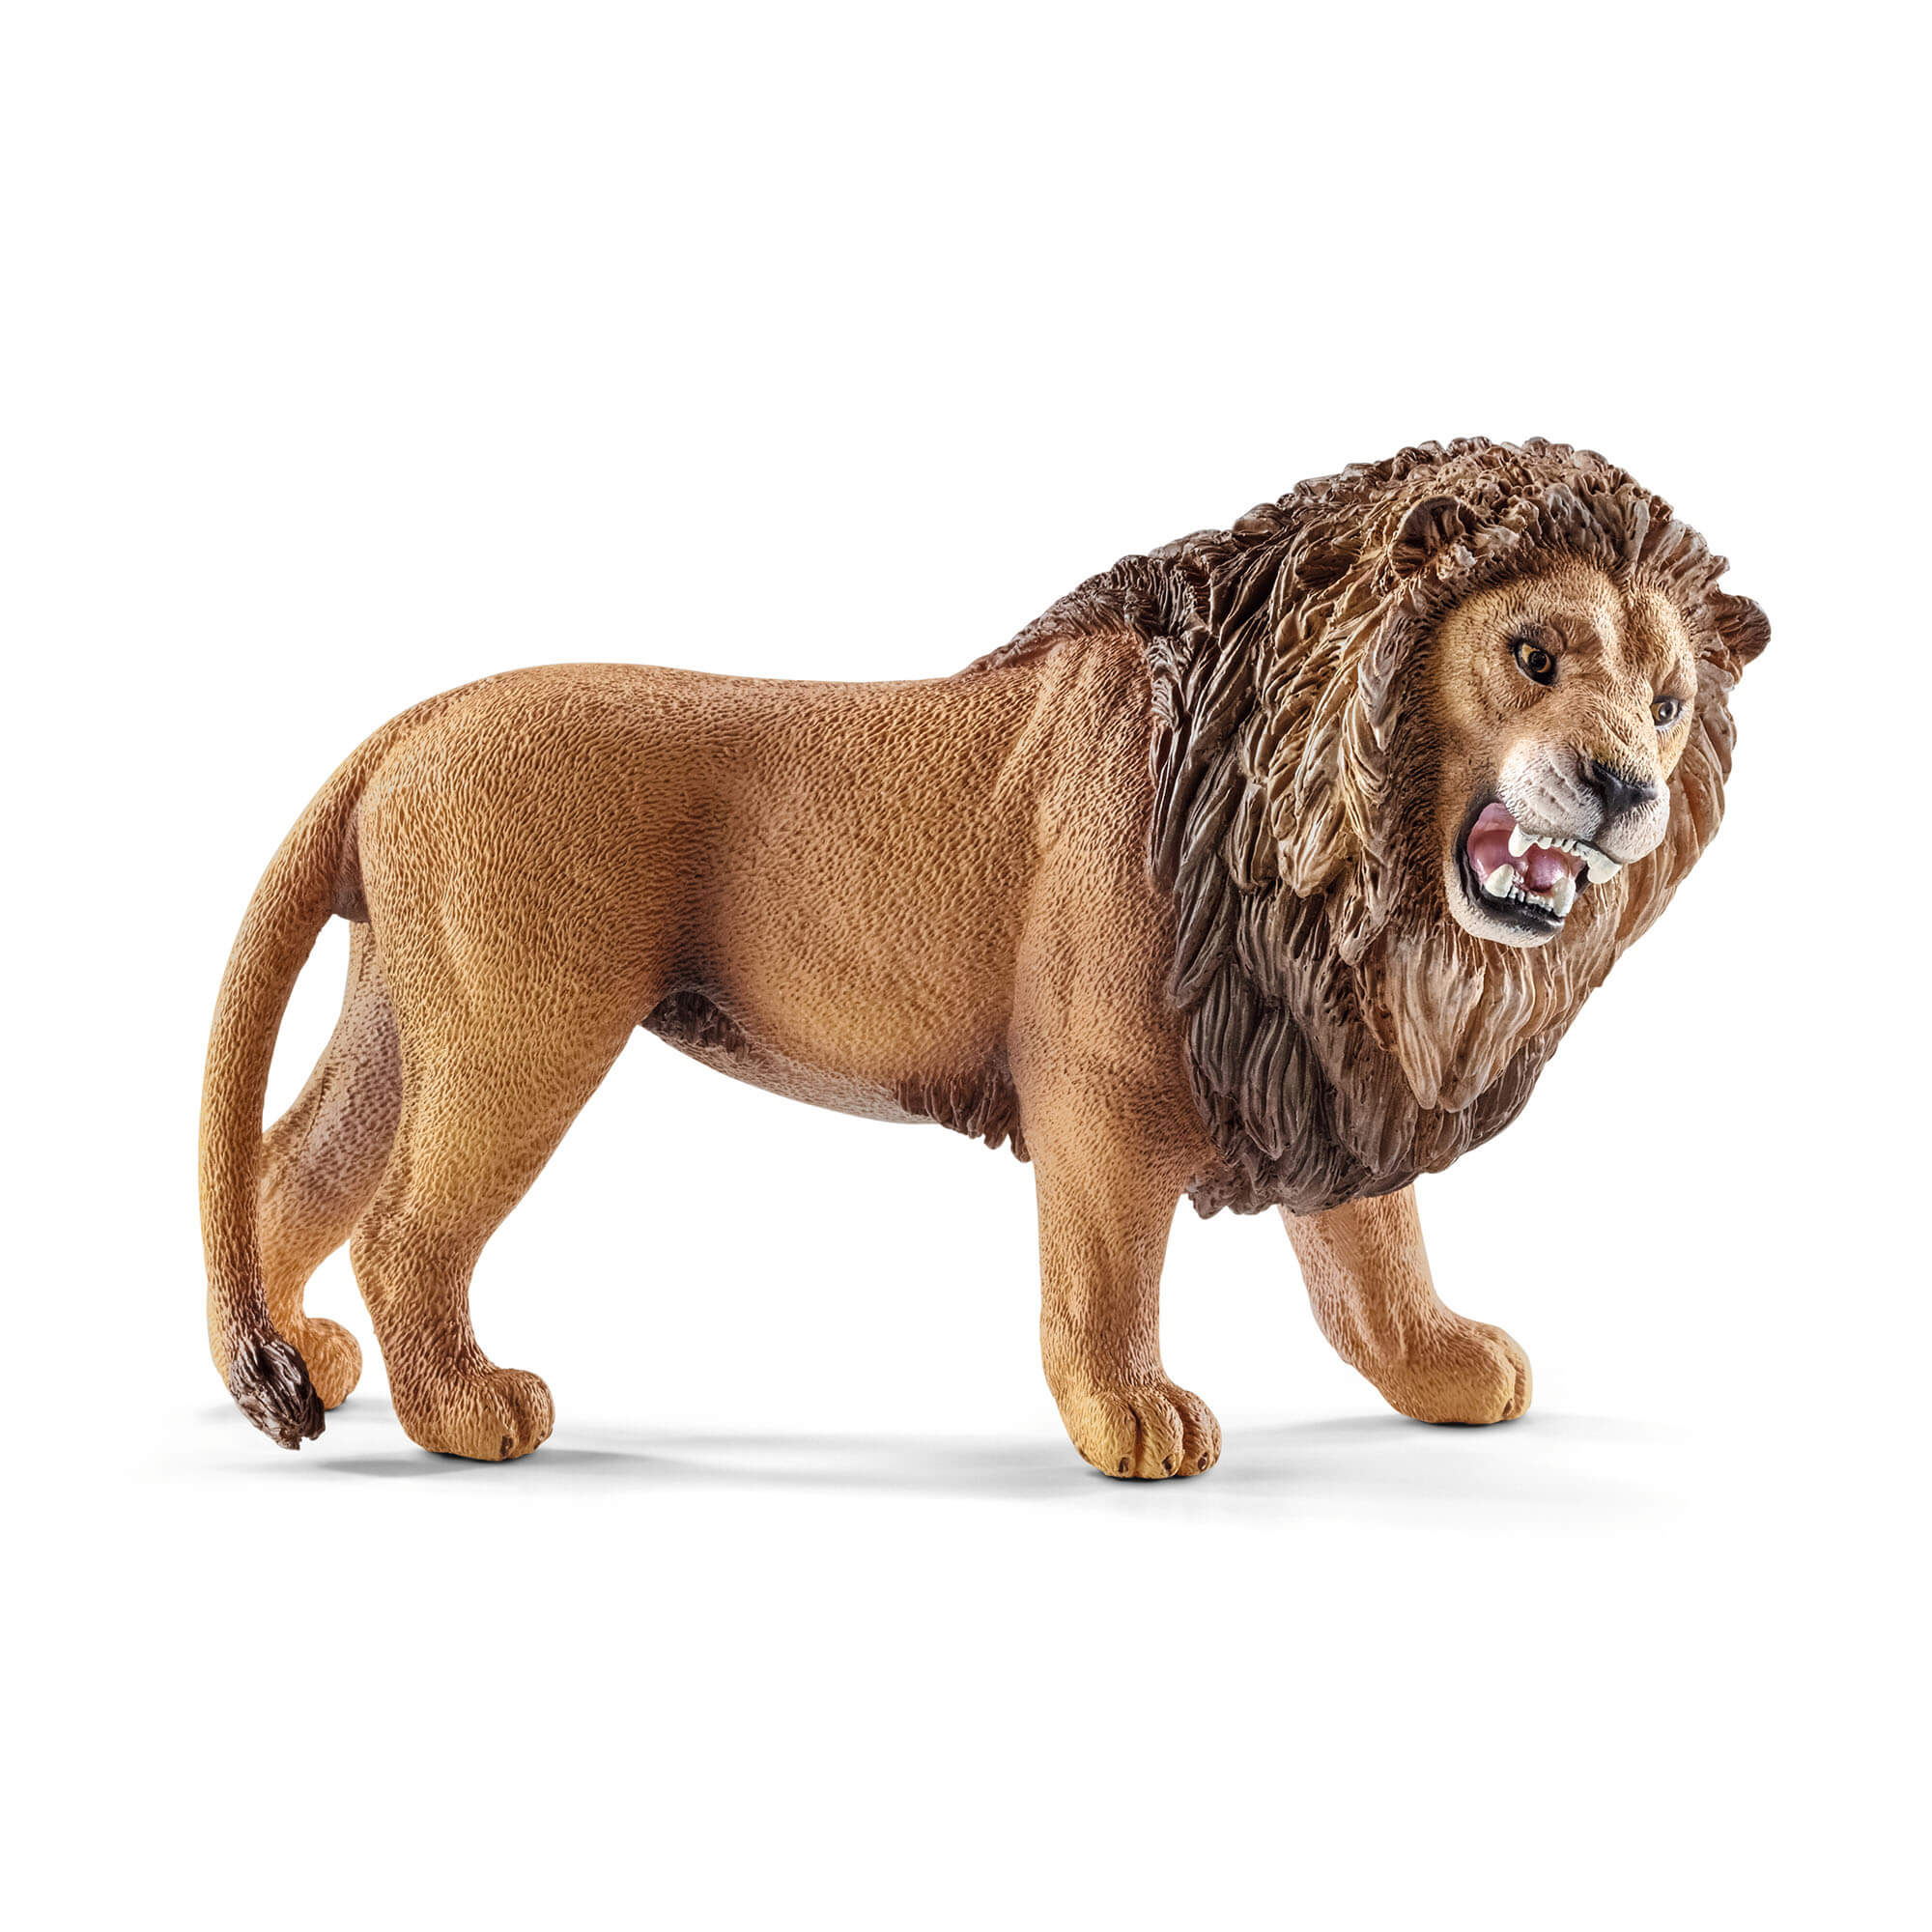 Schleich Wild Life Roaring Lion Animal Figure